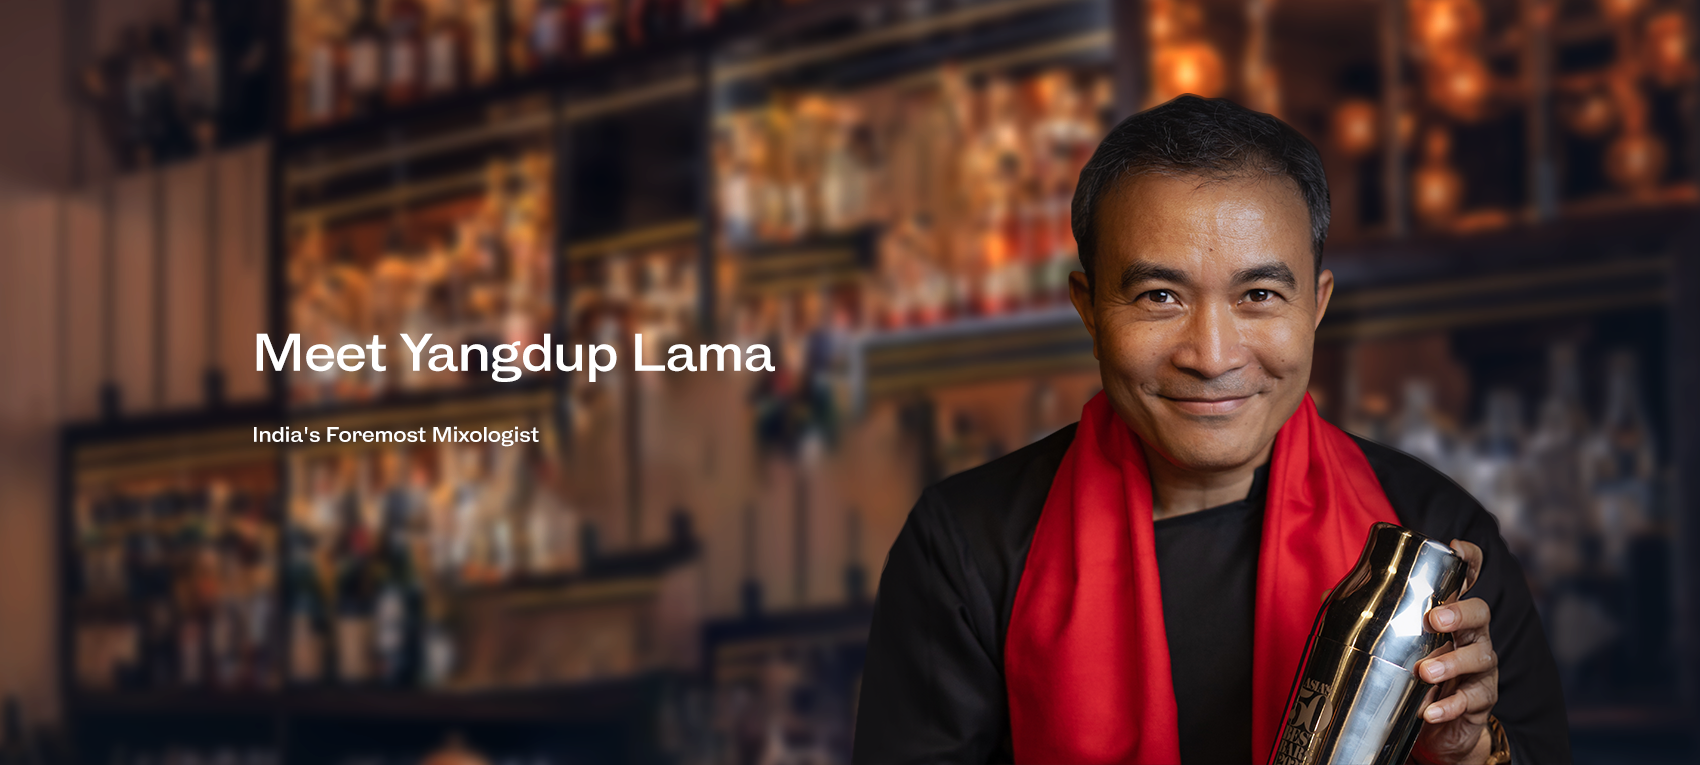 Yangdup Lama - The Mixologist